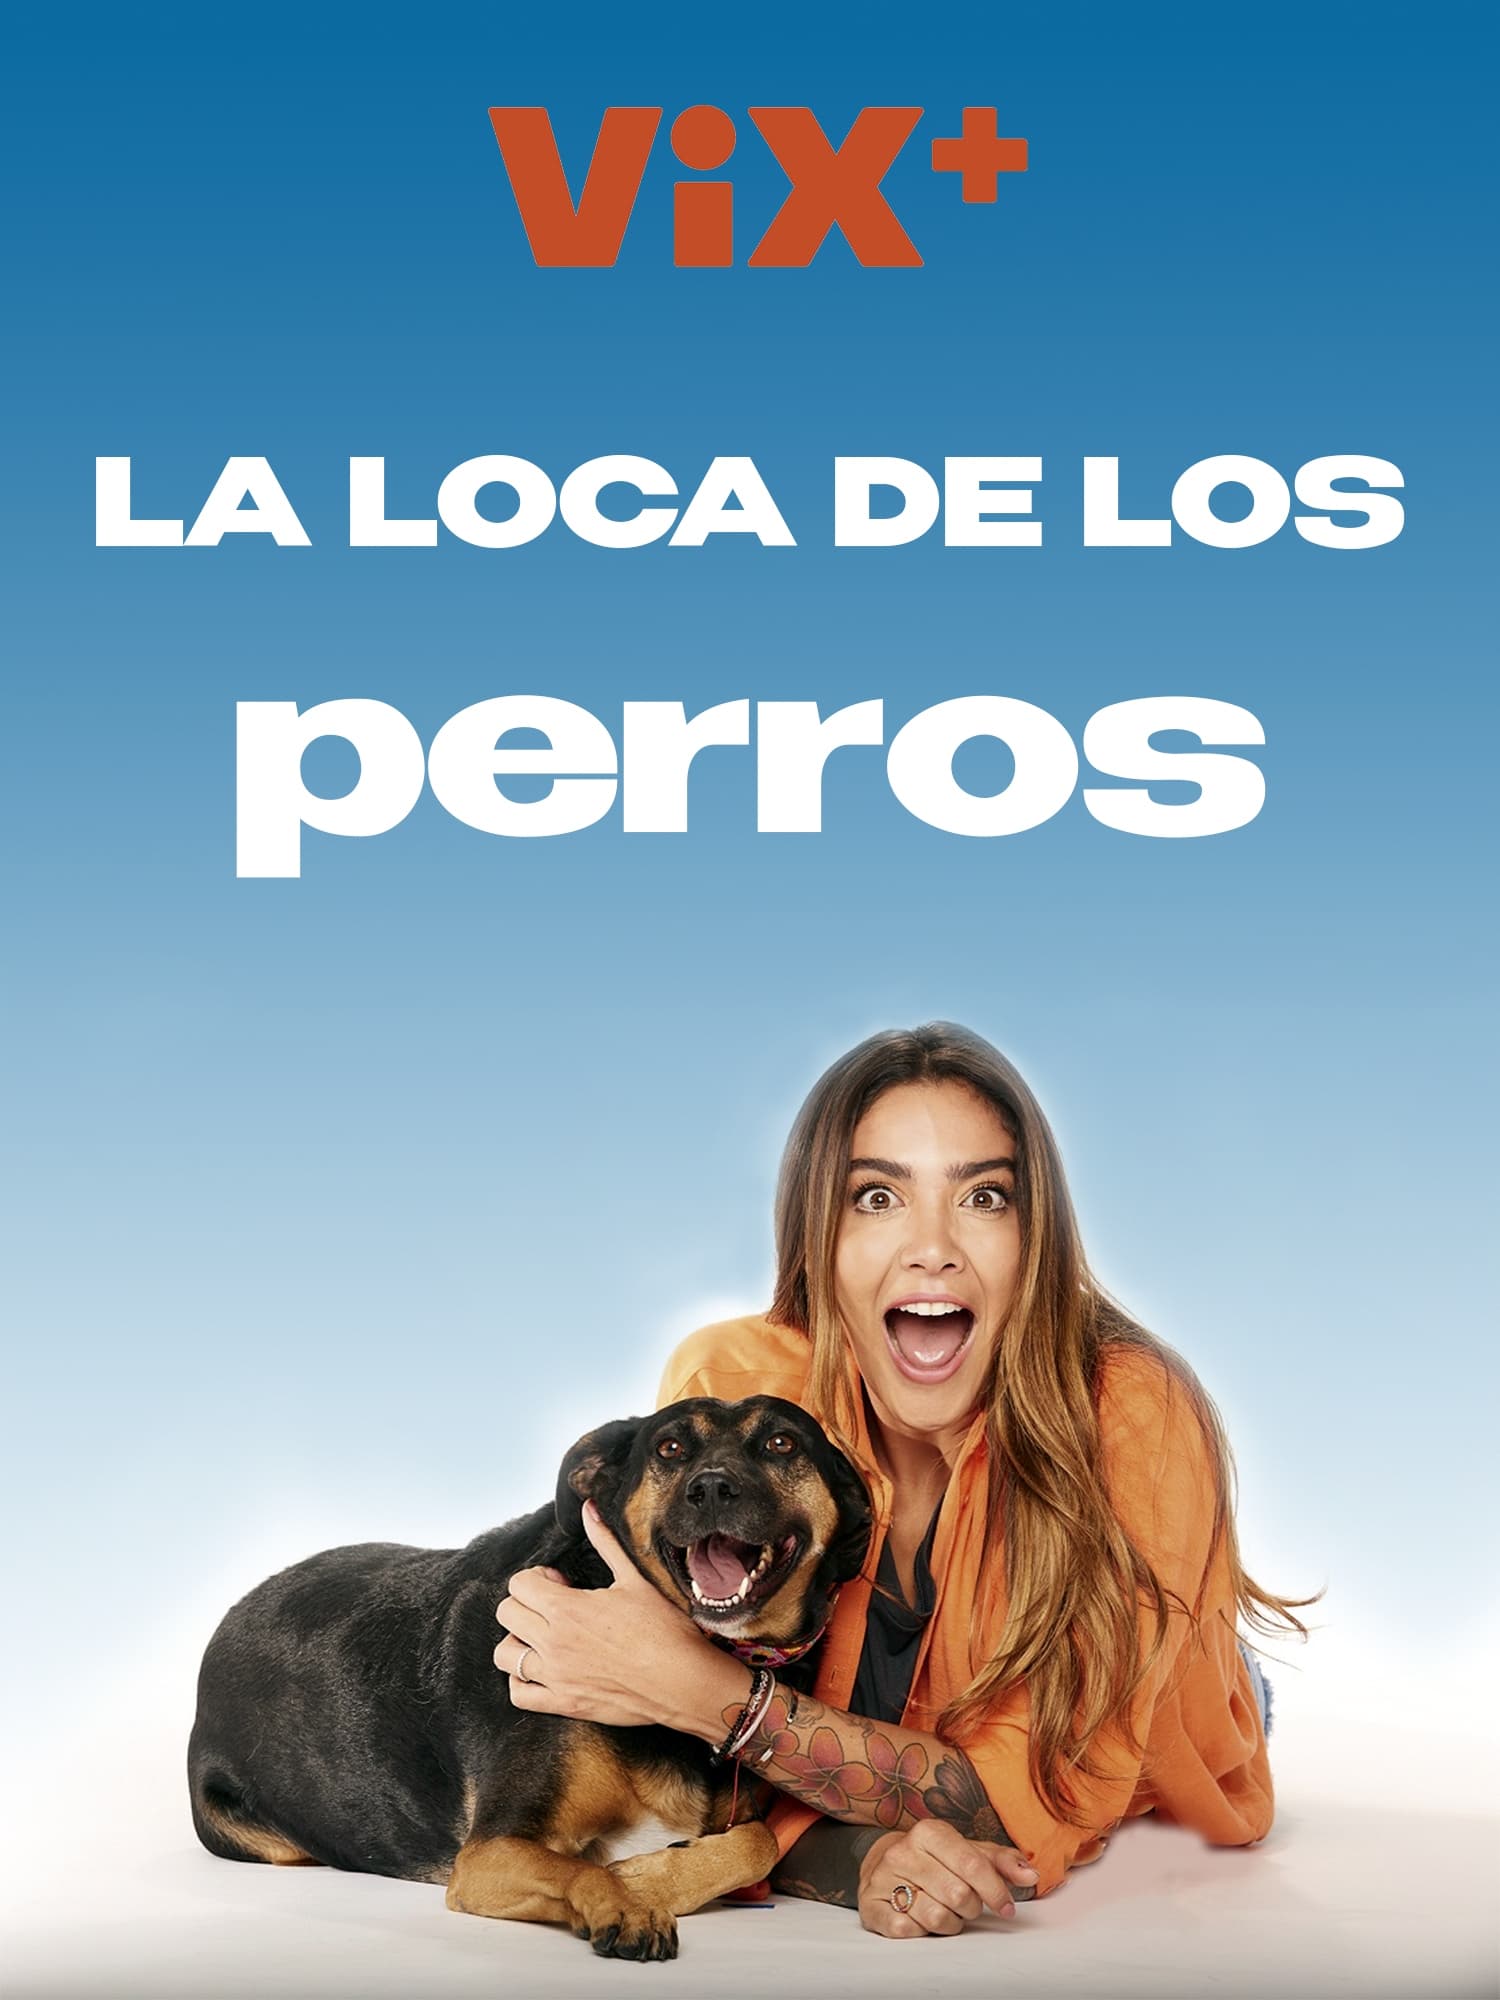 TV ratings for Crazy Dog Lady (La Loca De Los Perros) in Poland. ViX+ TV series